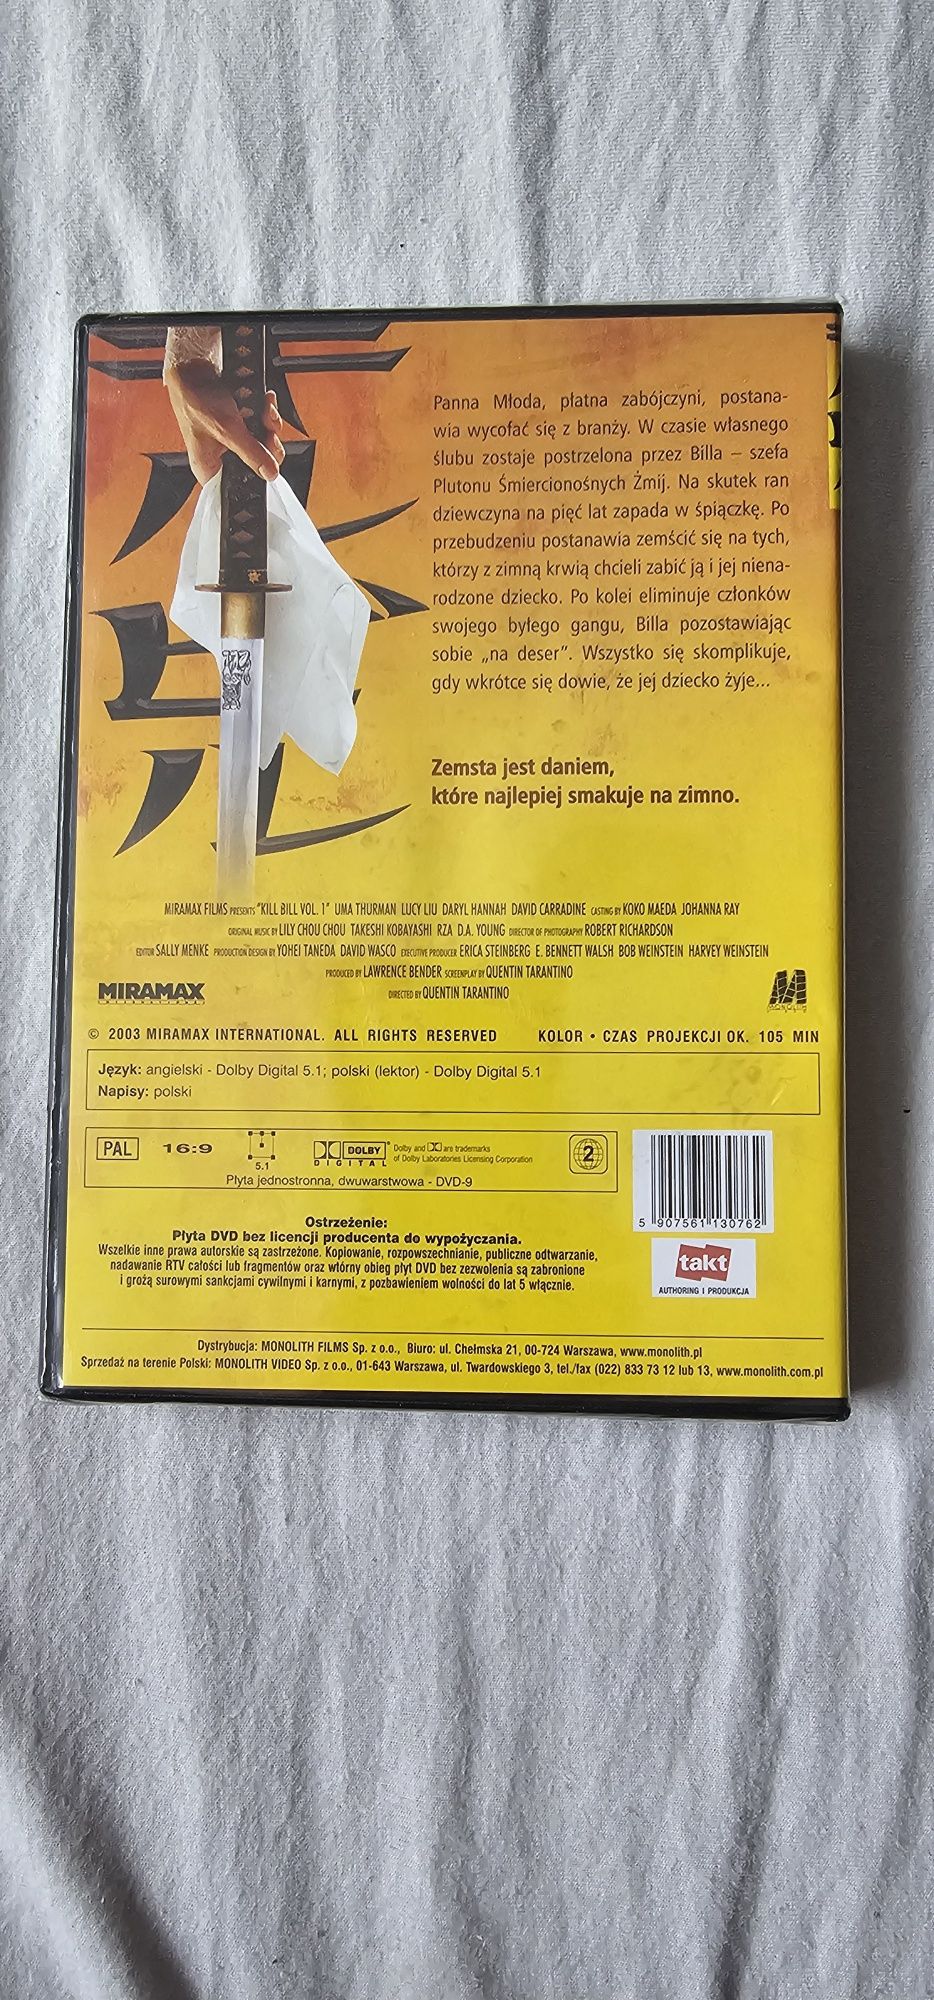 Film na DVD "Kill Bill"